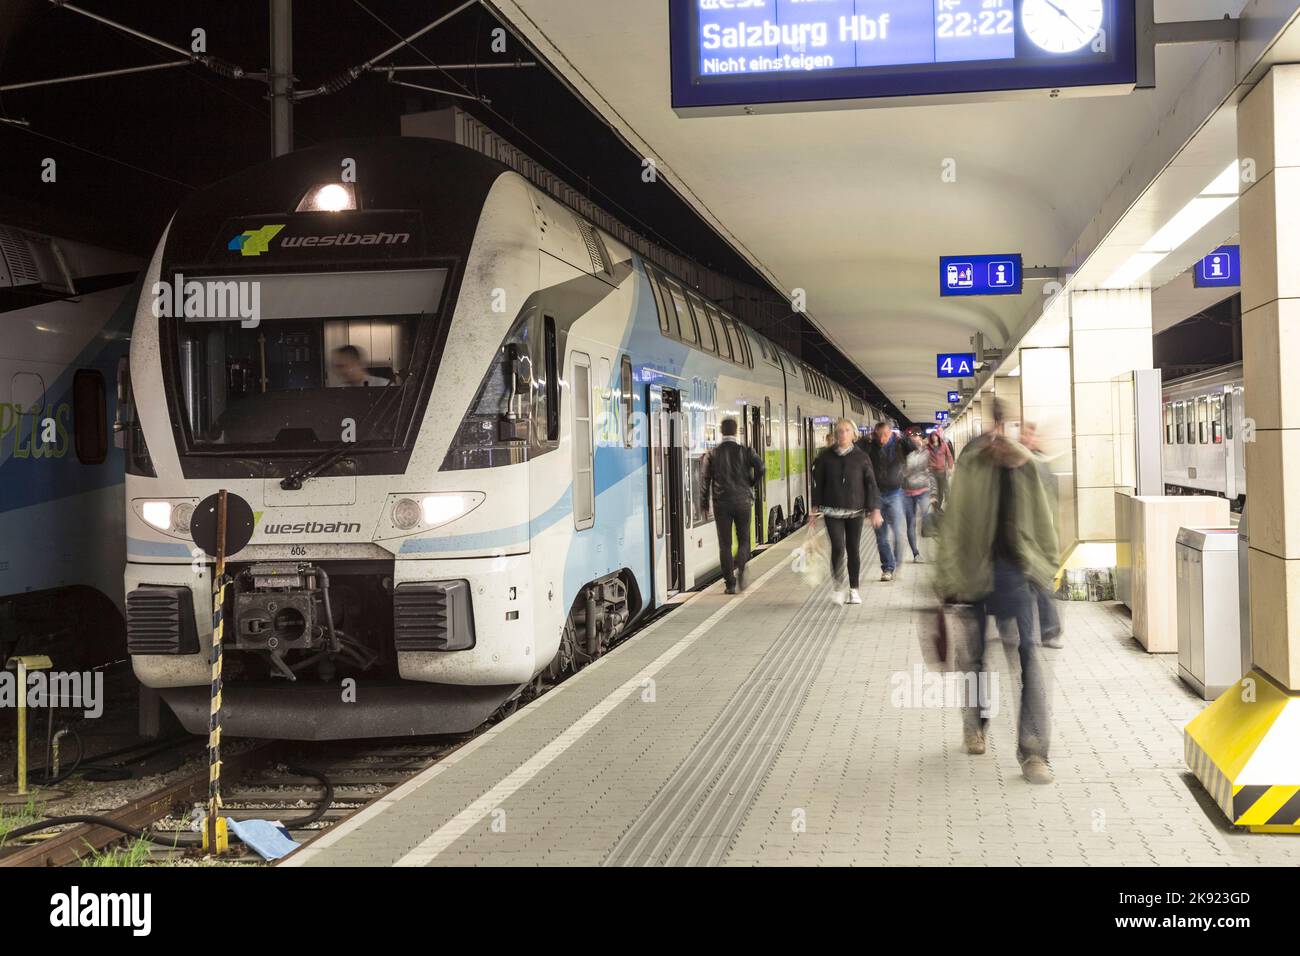 VIENNE, AUTRICHE - 25 avril 2015 : les gens arrivent à la gare Westbahnhof de vienne. Les trains de la Westbahn s'arrêtent à la gare Wien Westbahnhof en V. Banque D'Images